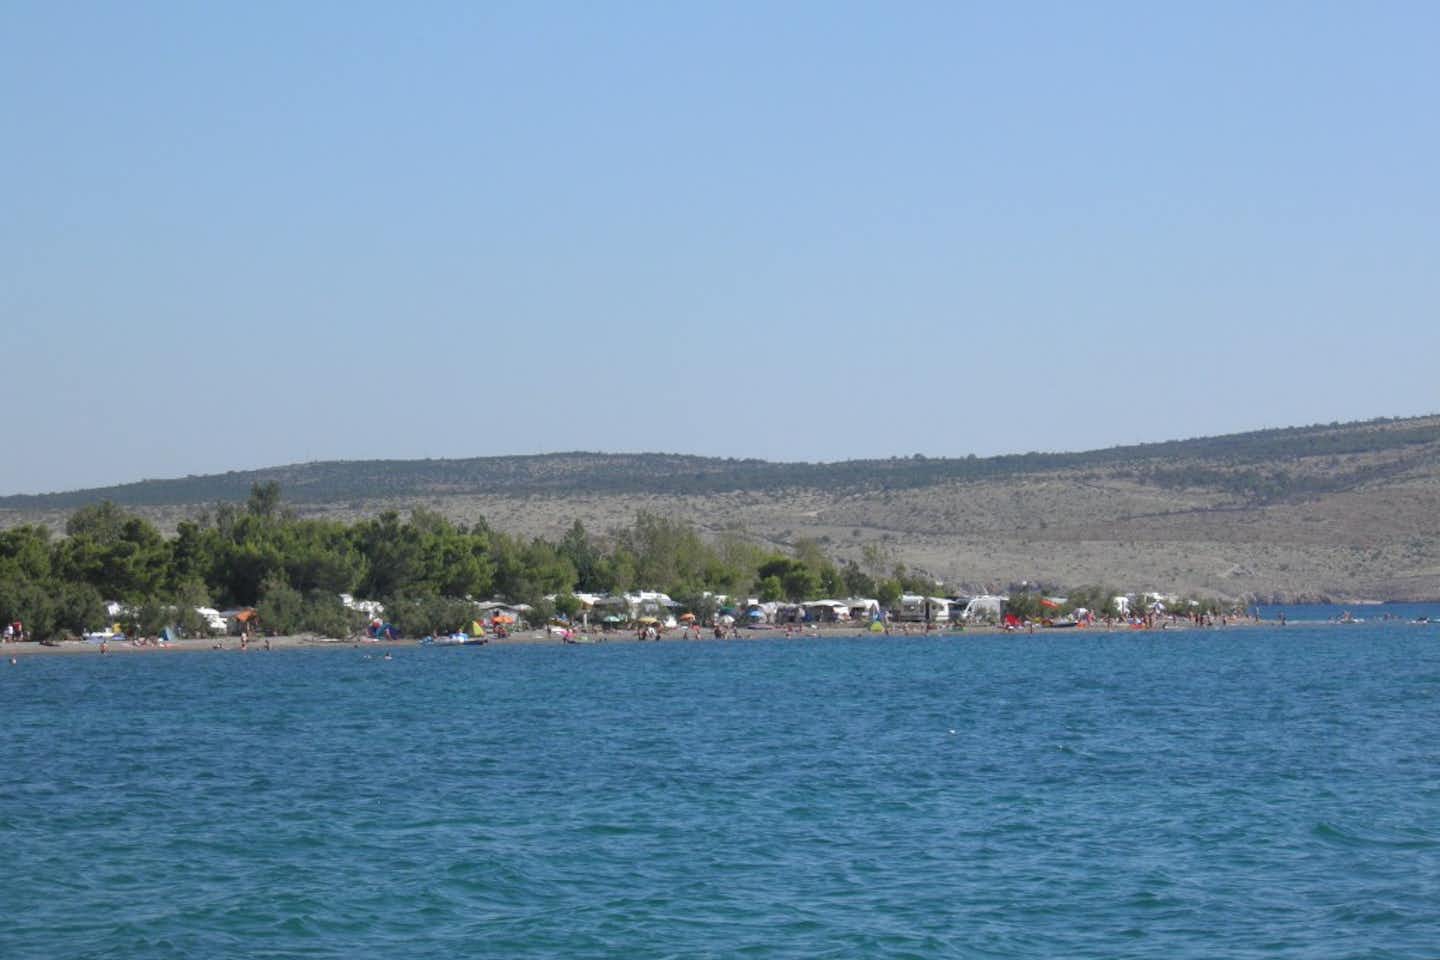 Autocamp Pisak - Blick auf den Campingplatz vom Mittelmeer aus